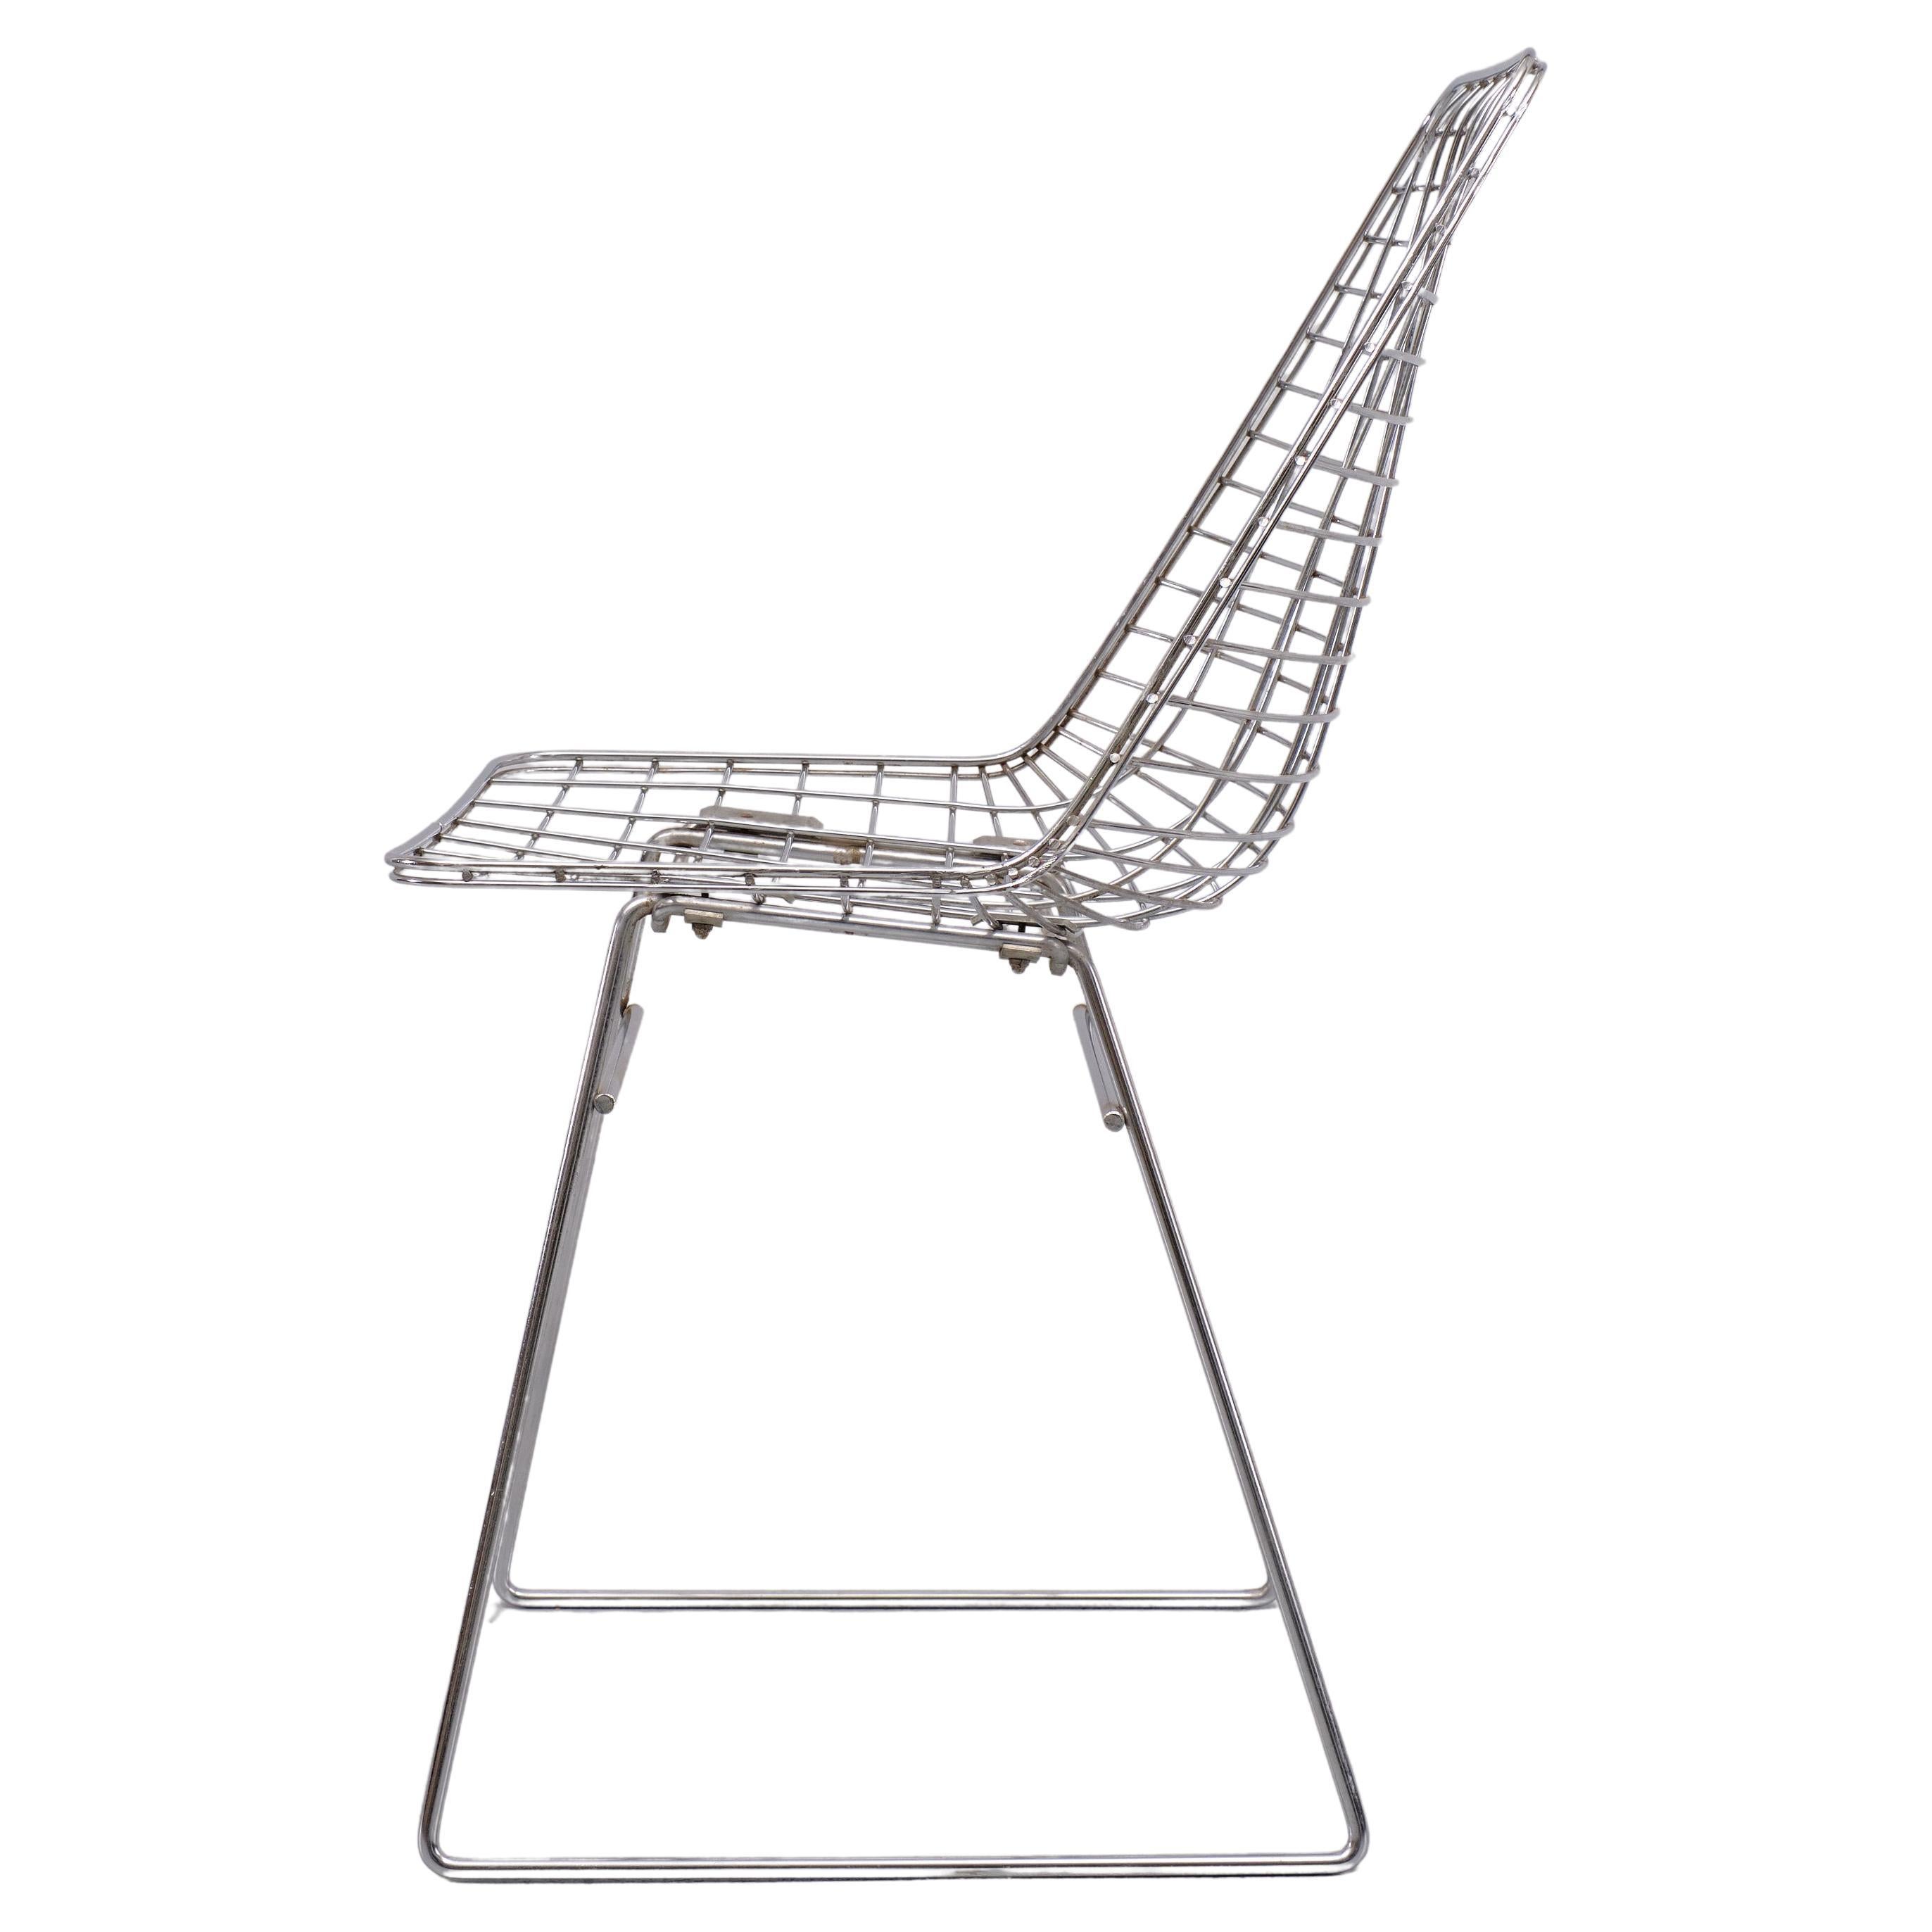 Sehr schöne Chrom auf Stahldraht Stuhl . Von Pastoe  1960s . 
Sitzhöhe 46 cm 